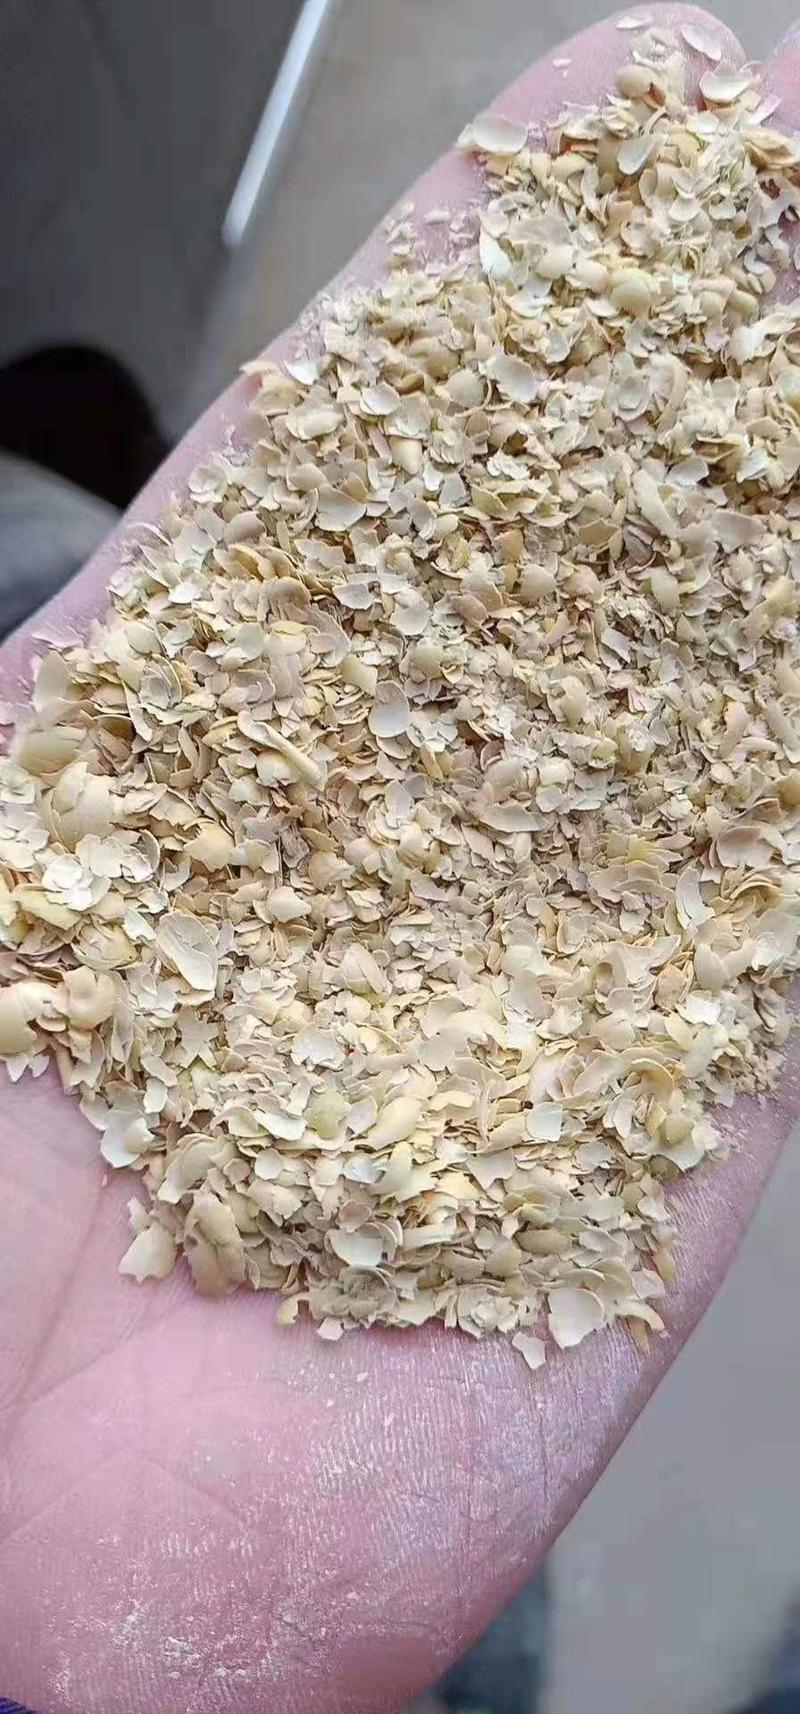 厂家批发碎黄豆壳多种规格无土无沙无杂质质量保证